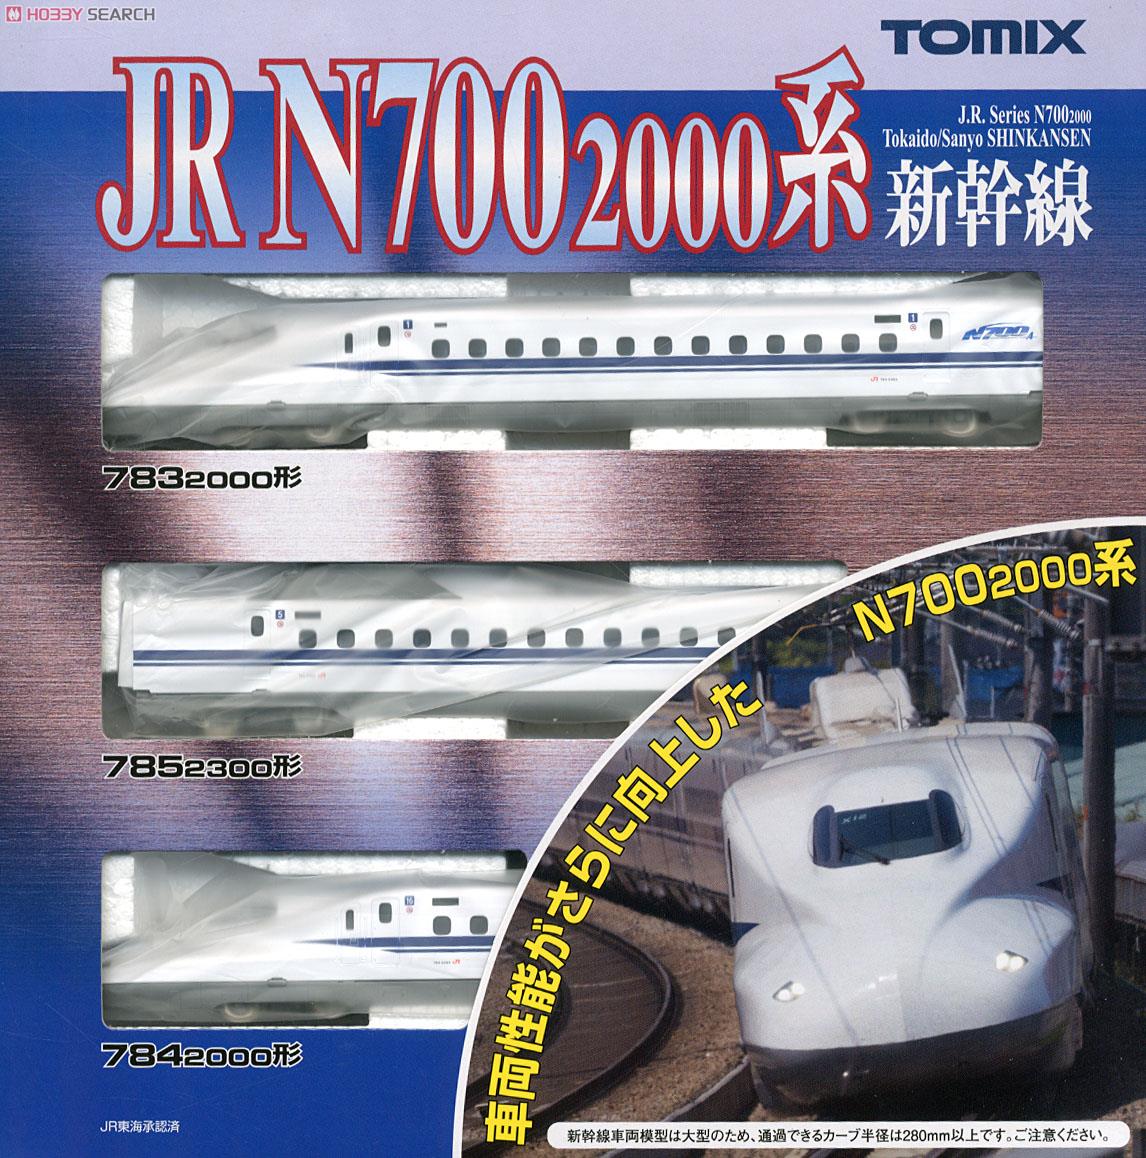 JR N700-2000系 東海道・山陽新幹線 (基本・3両セット) (鉄道模型) パッケージ1